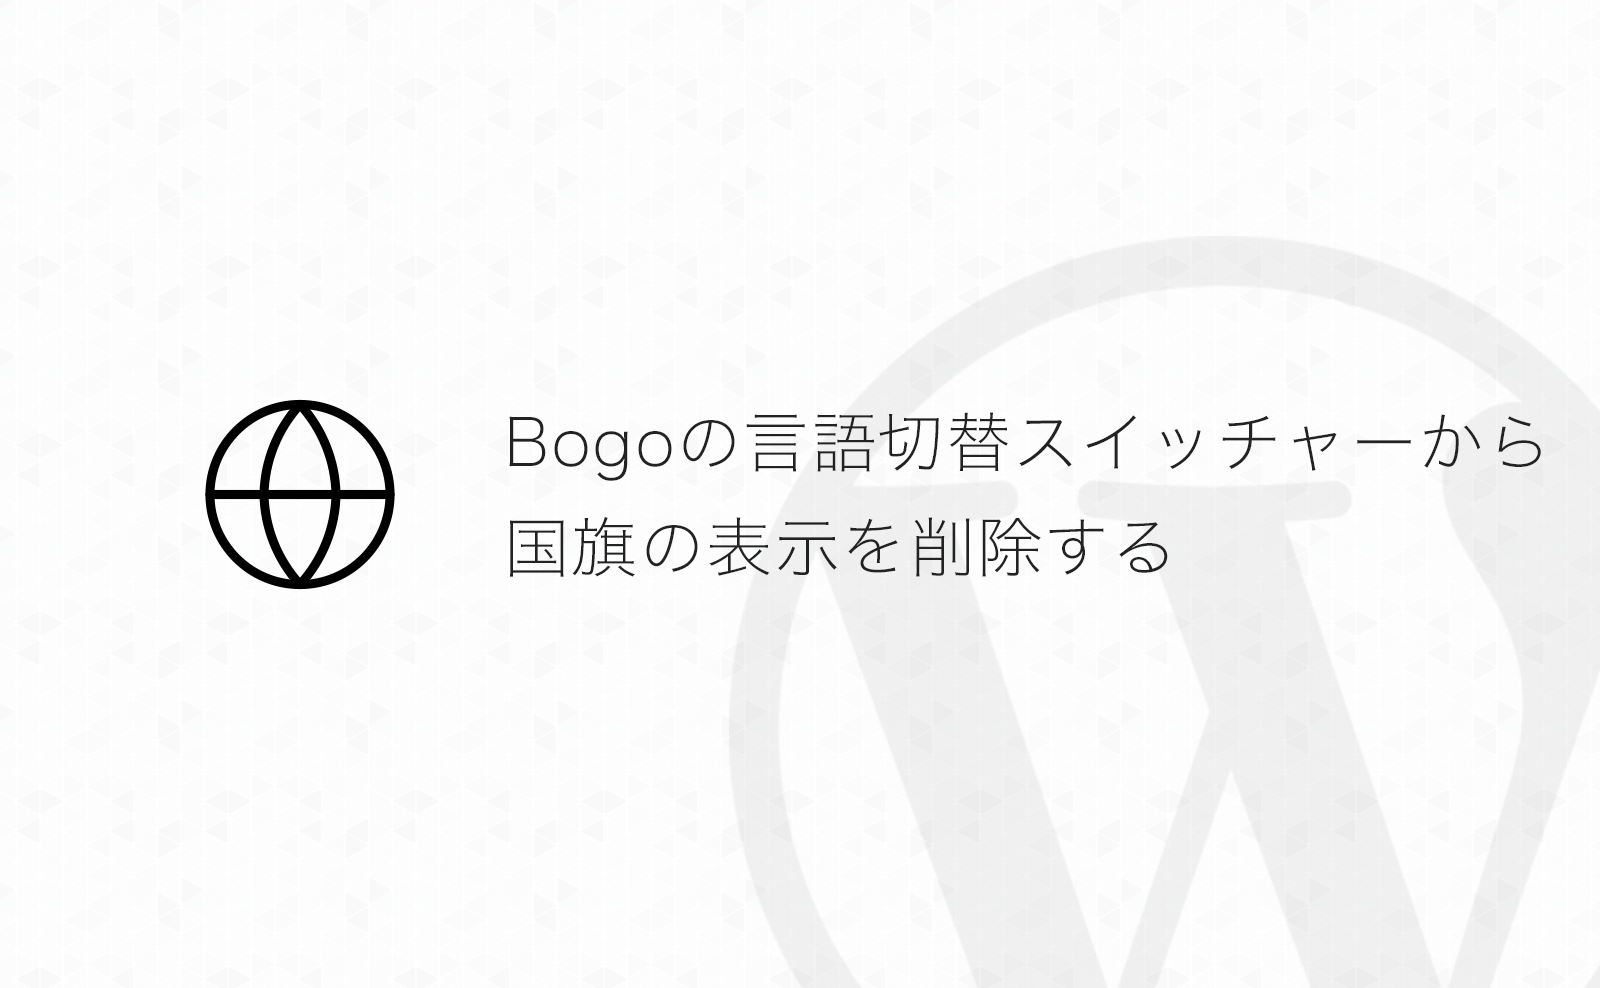 【WordPress】多言語化プラグイン「Bogo」の言語切替スイッチャーの国旗を削除する方法